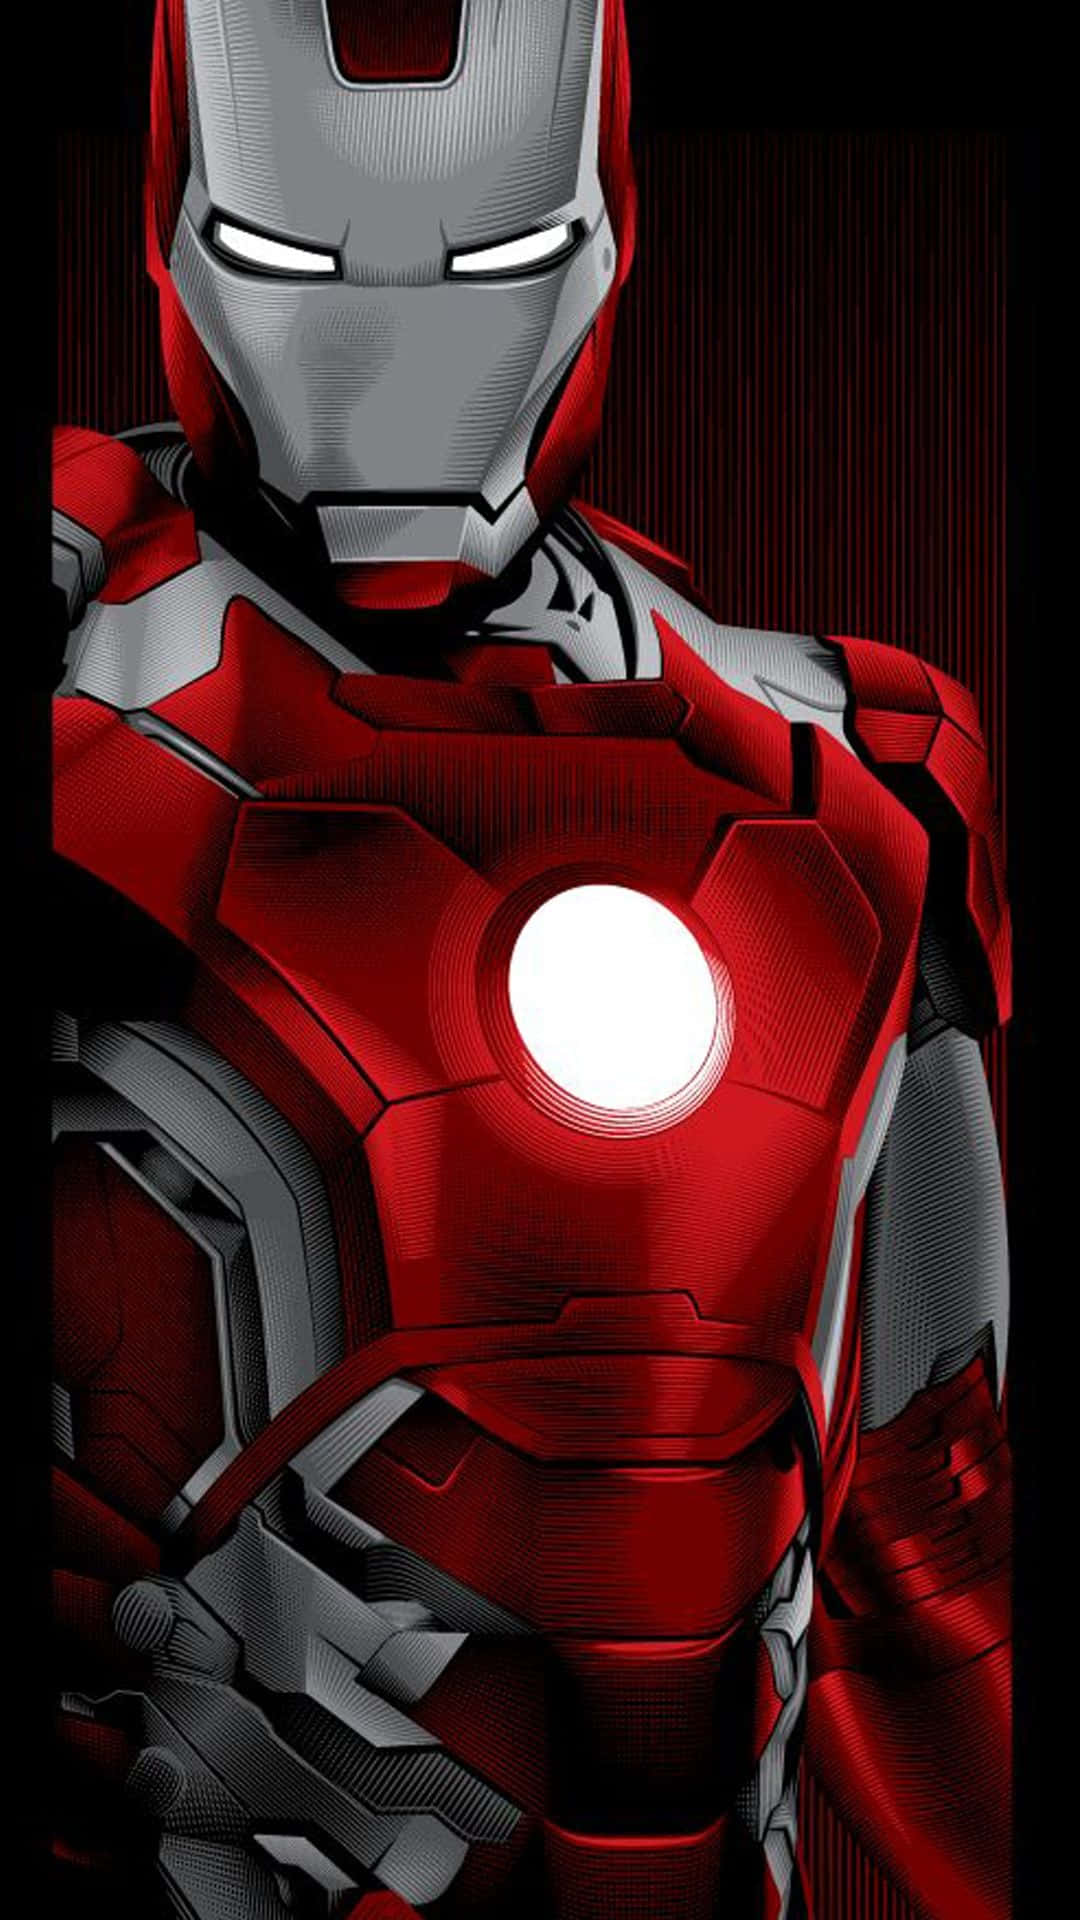 Puk op med Iron Man Edition iPhone X og tag din teknologi til det næste niveau med denne strålende tapet. Wallpaper